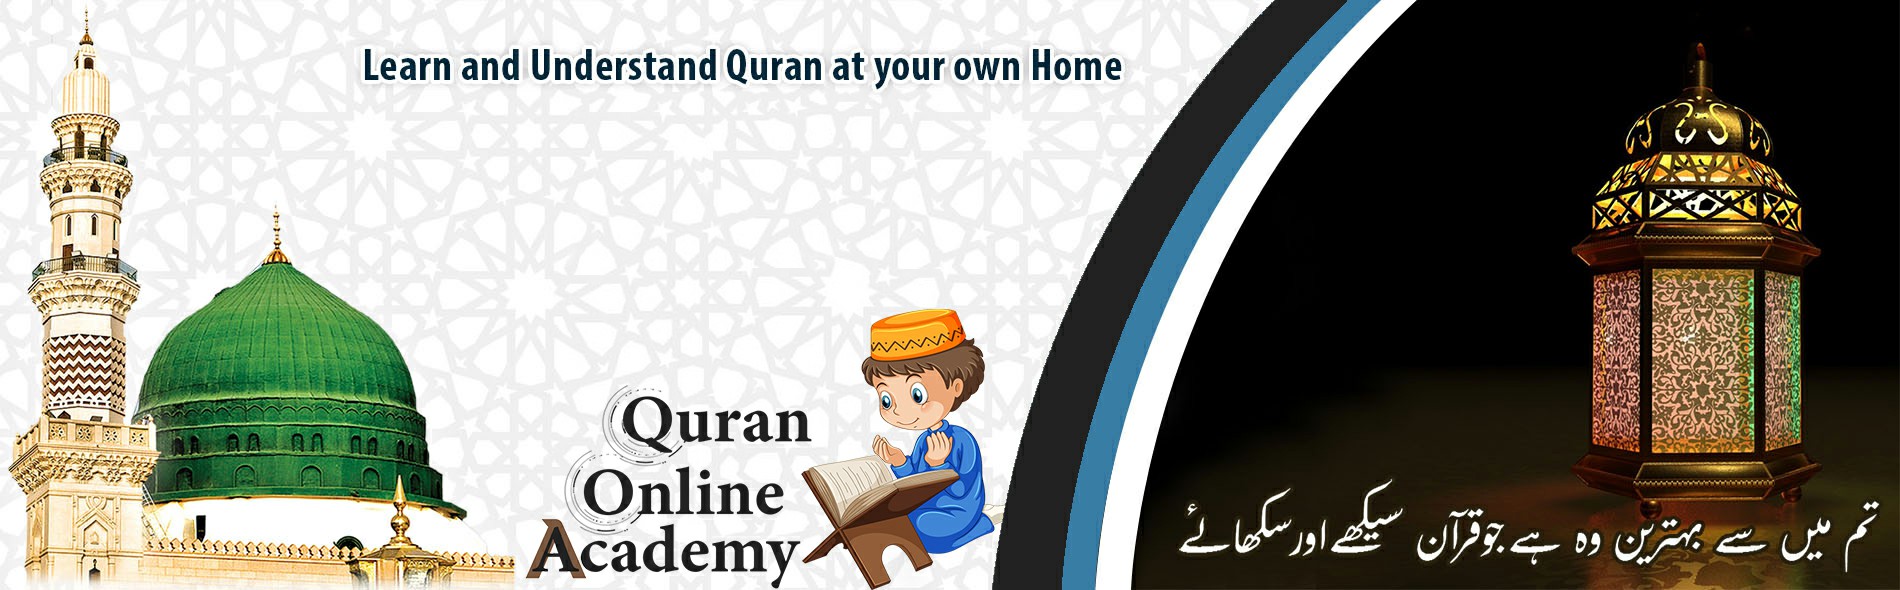 Al Quran Online Academy BELGIUM